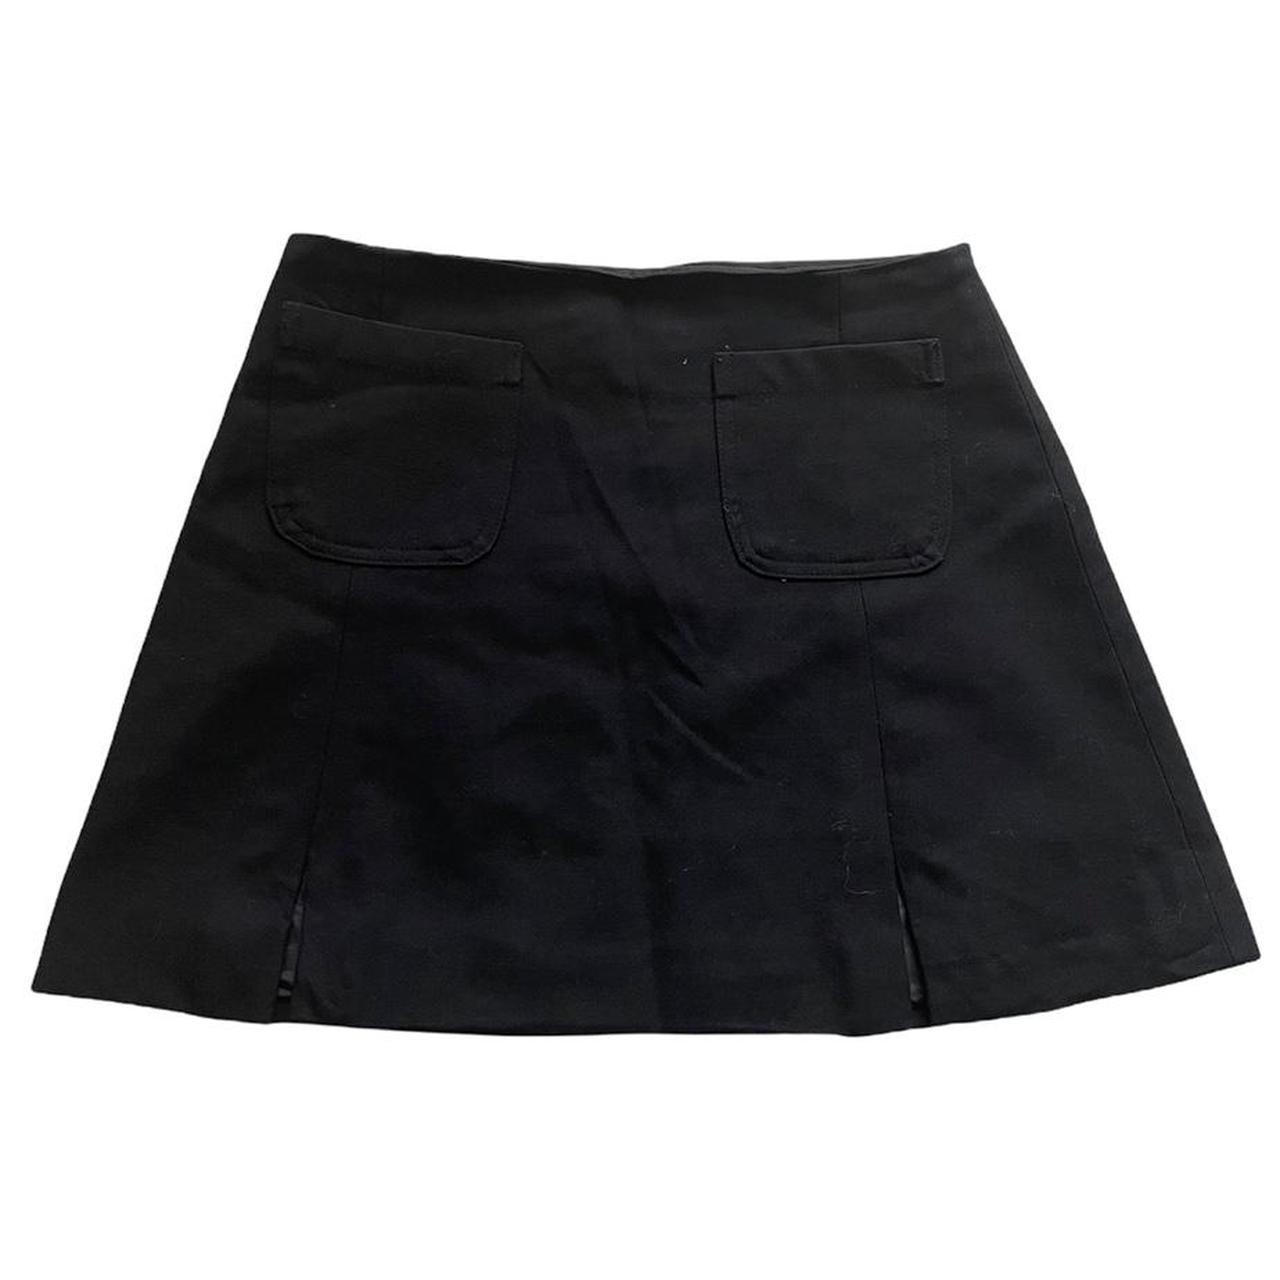 Vintage 90s skirt in black 🖤 early 2000s mini skirt... - Depop